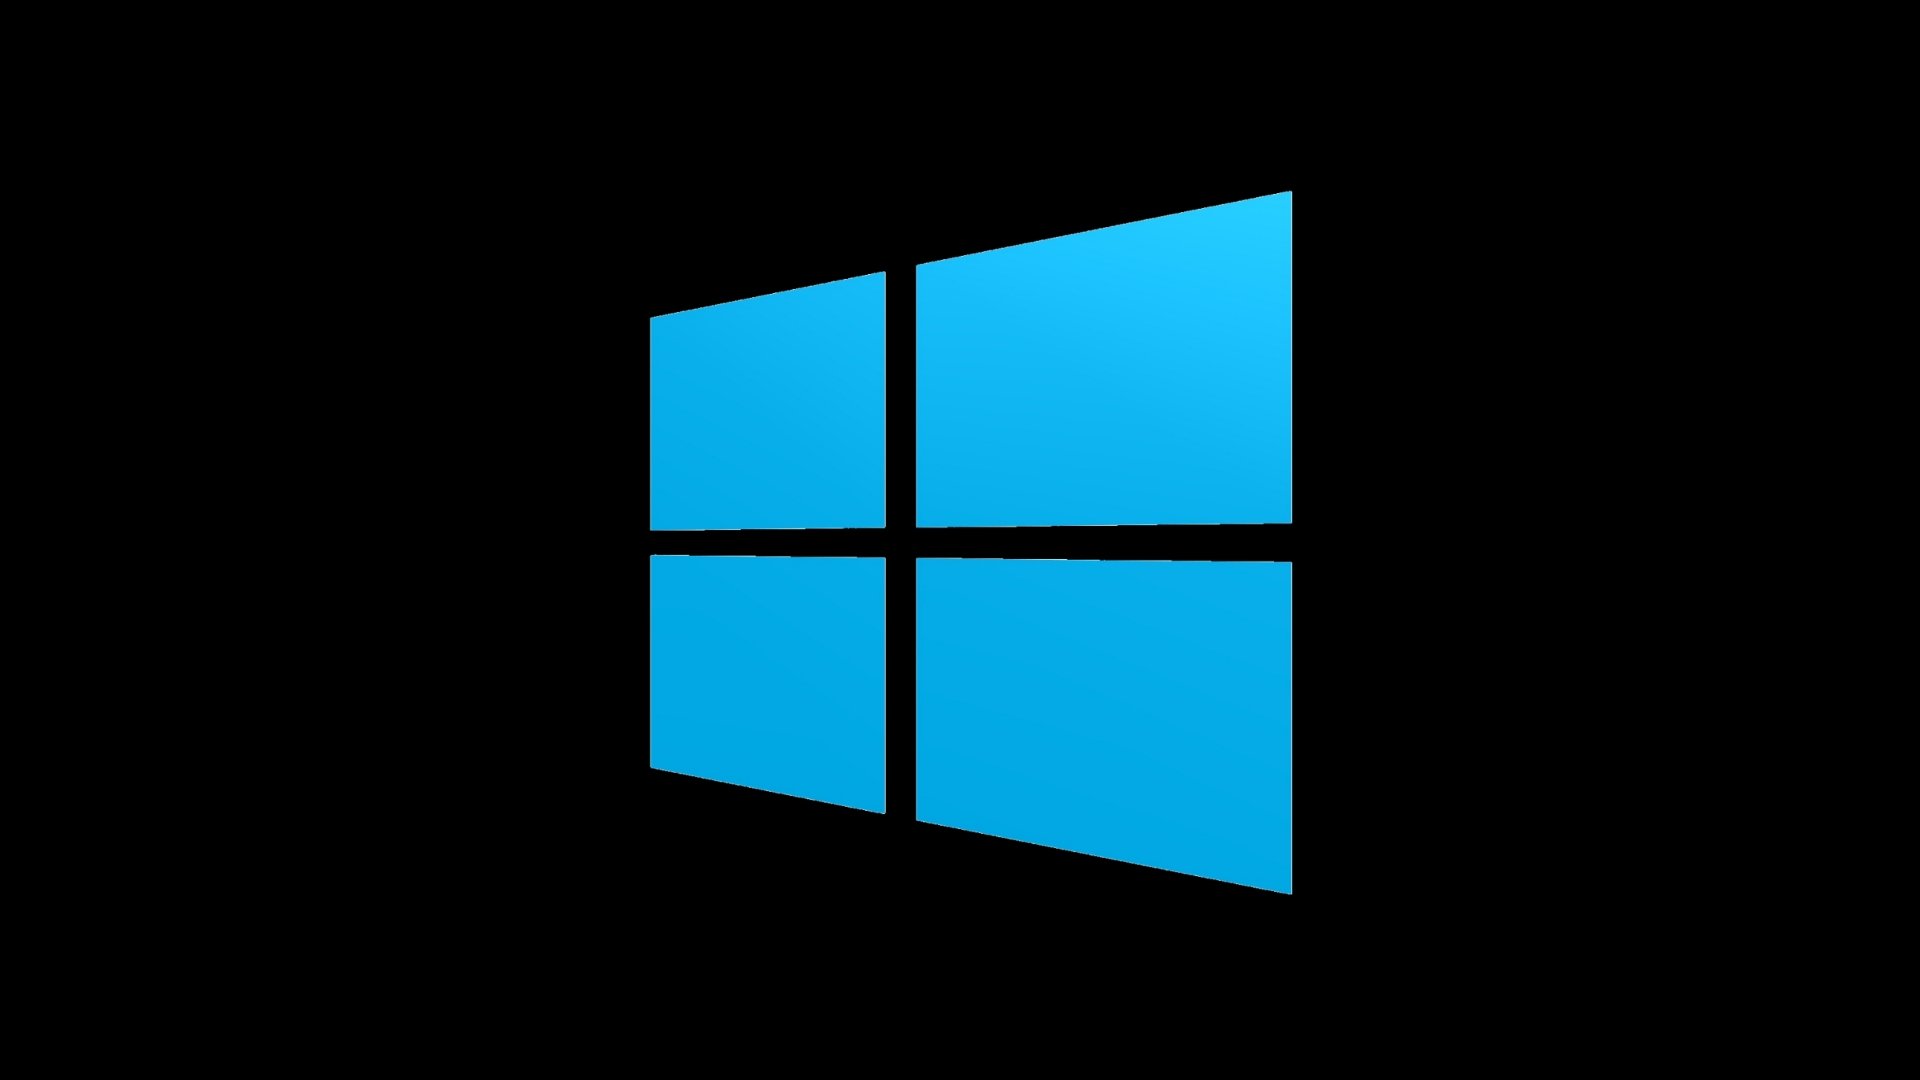 Microsoft выпустила большое осеннее обновление для Windows 10 и перевела систему на новый цикл релизов апдейтов